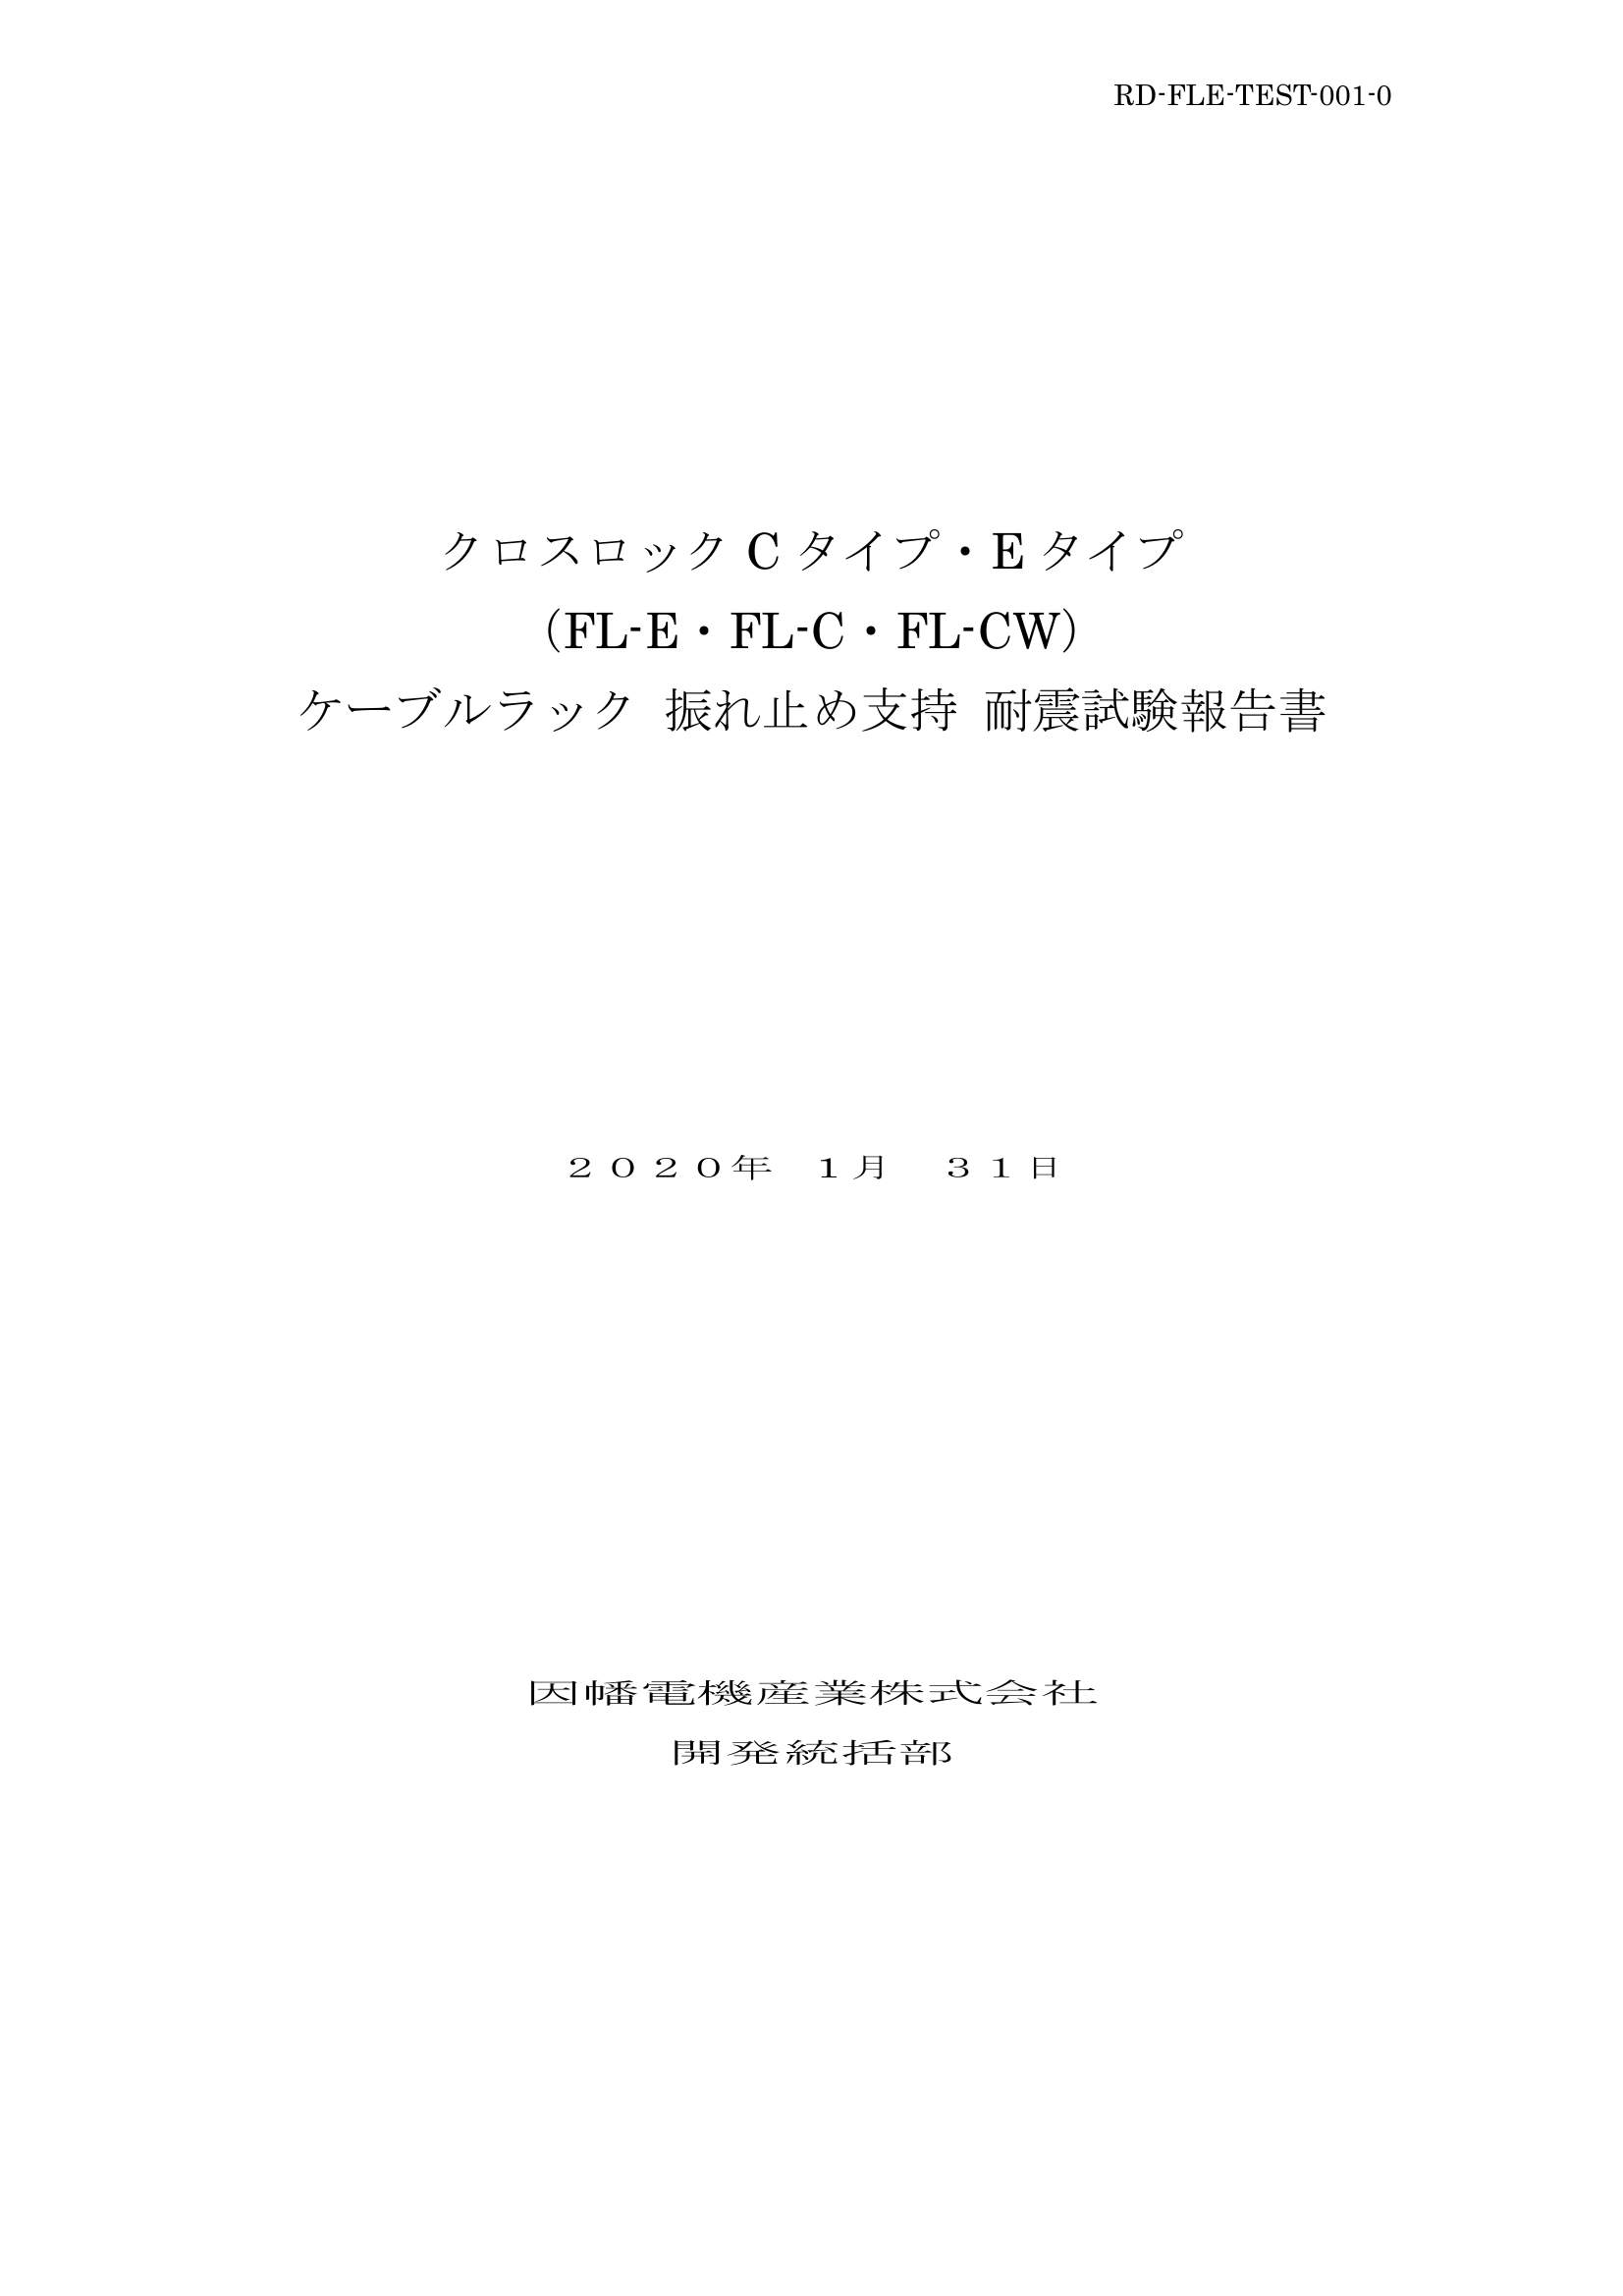 FL-E_耐震試験報告書_20200131.pdf